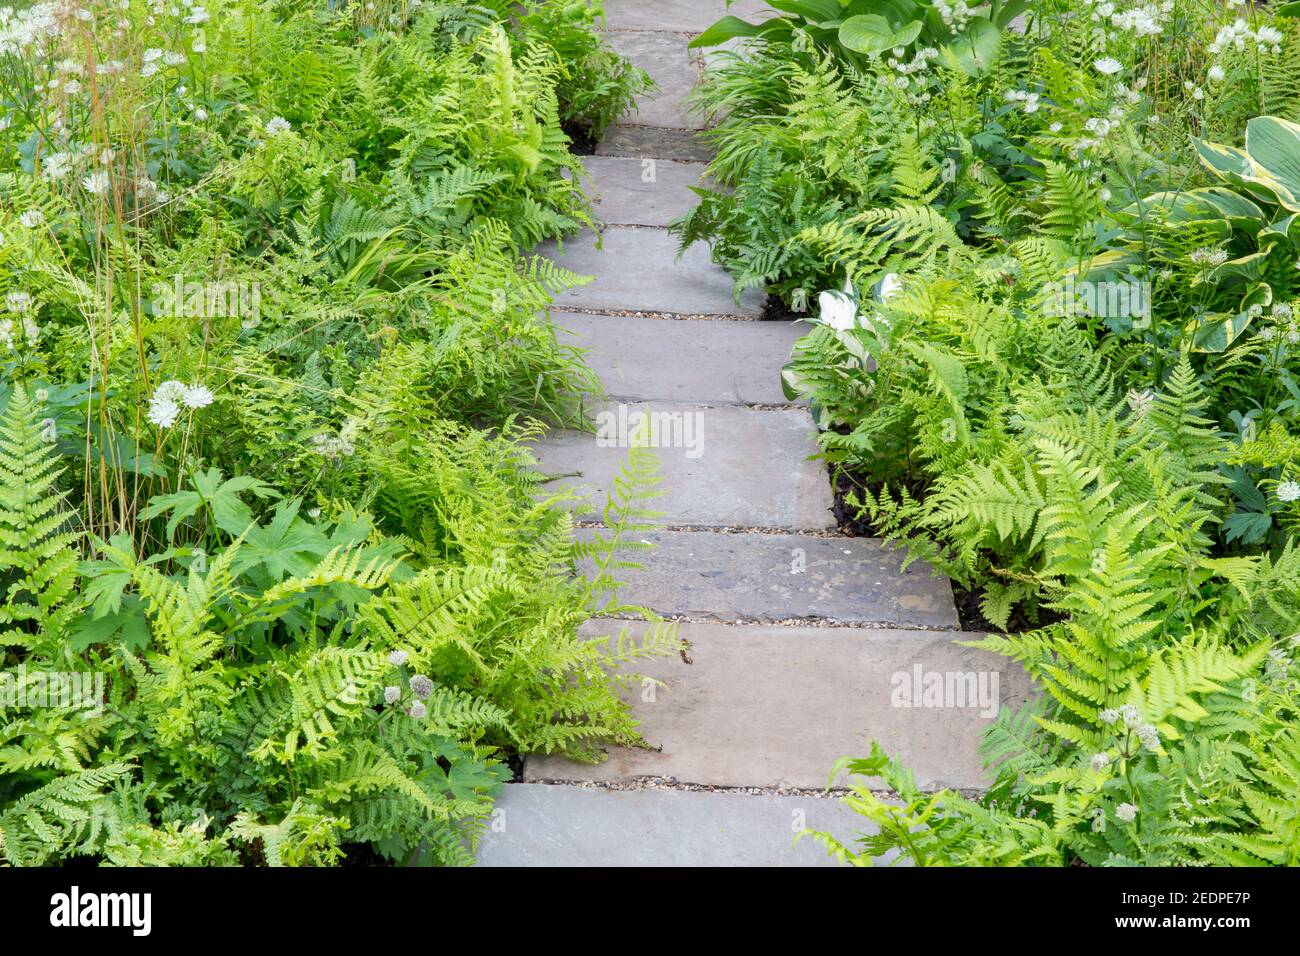 Un giardino all'inglese ombreggiato con lastre in pietra e piantagioni di felci e hosta in uno schema di piantagione verde colori Inghilterra GB Regno Unito Foto Stock